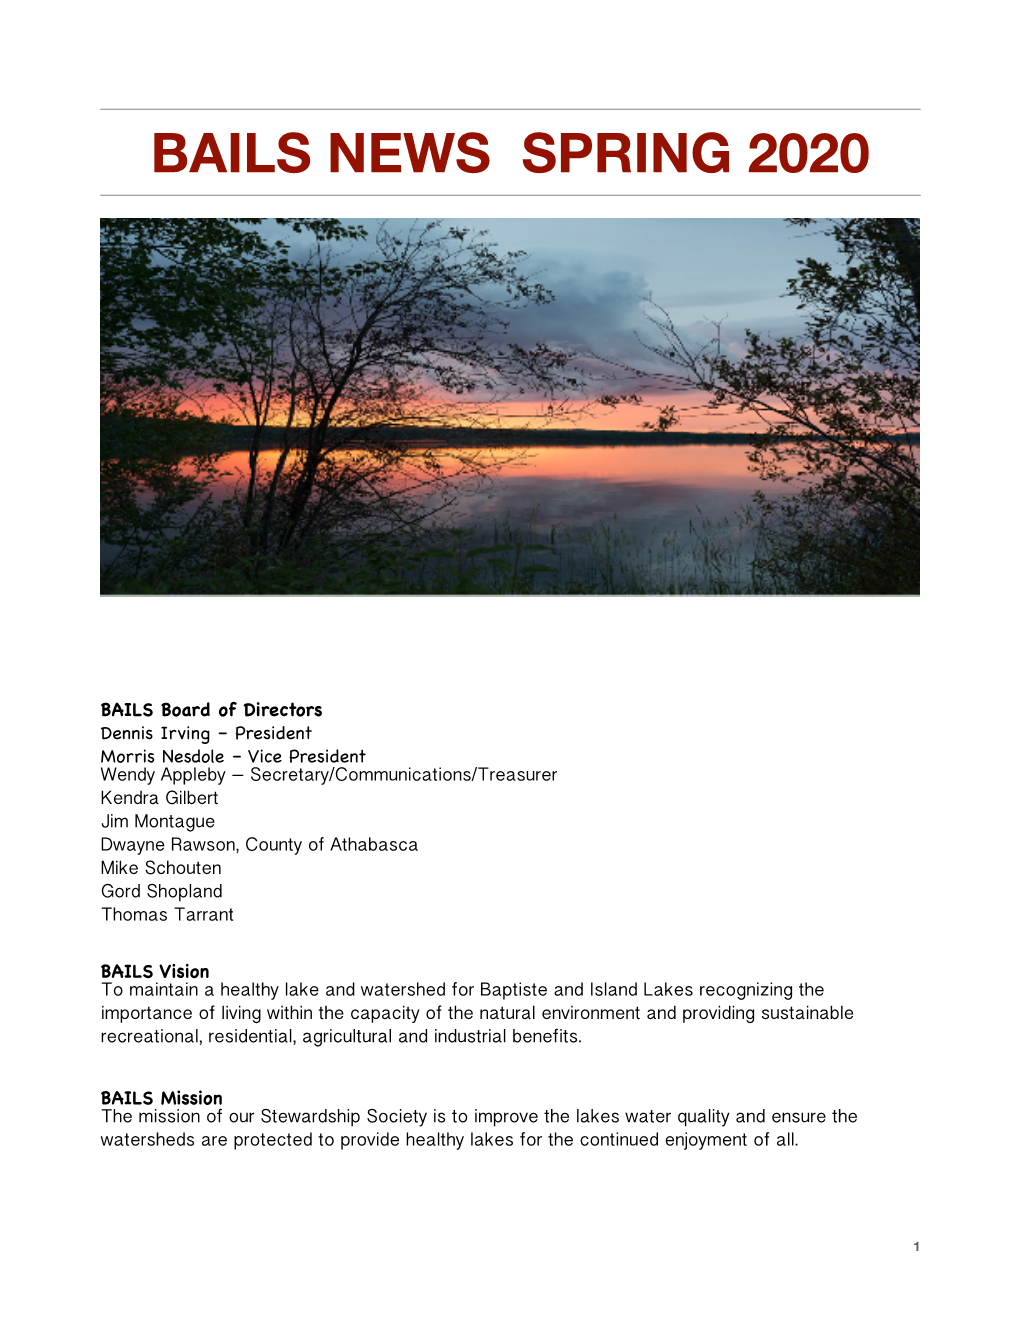 Bails News Spring 2020